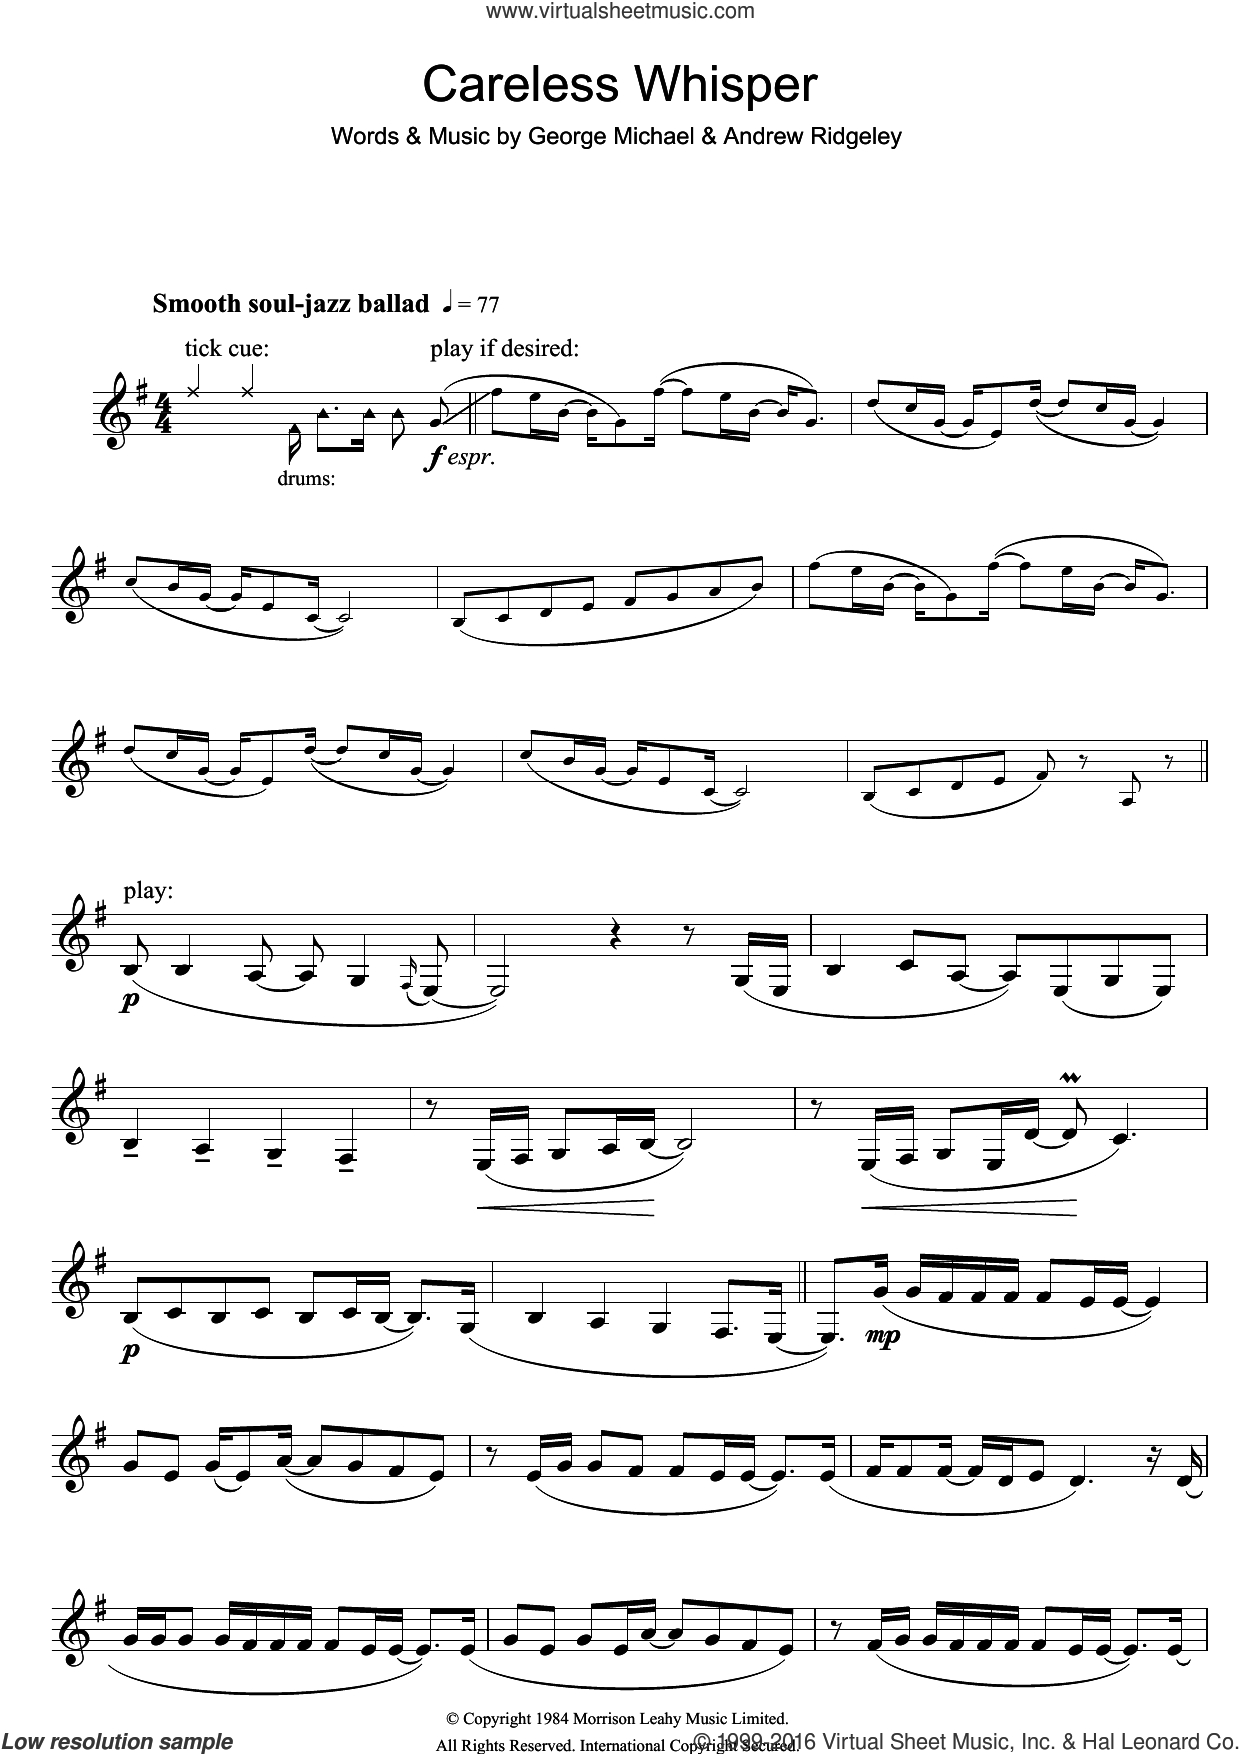 Careless Whisper Sheet Music For Clarinet Solo [Pdf] - Free Sheet Music For Clarinet Printable